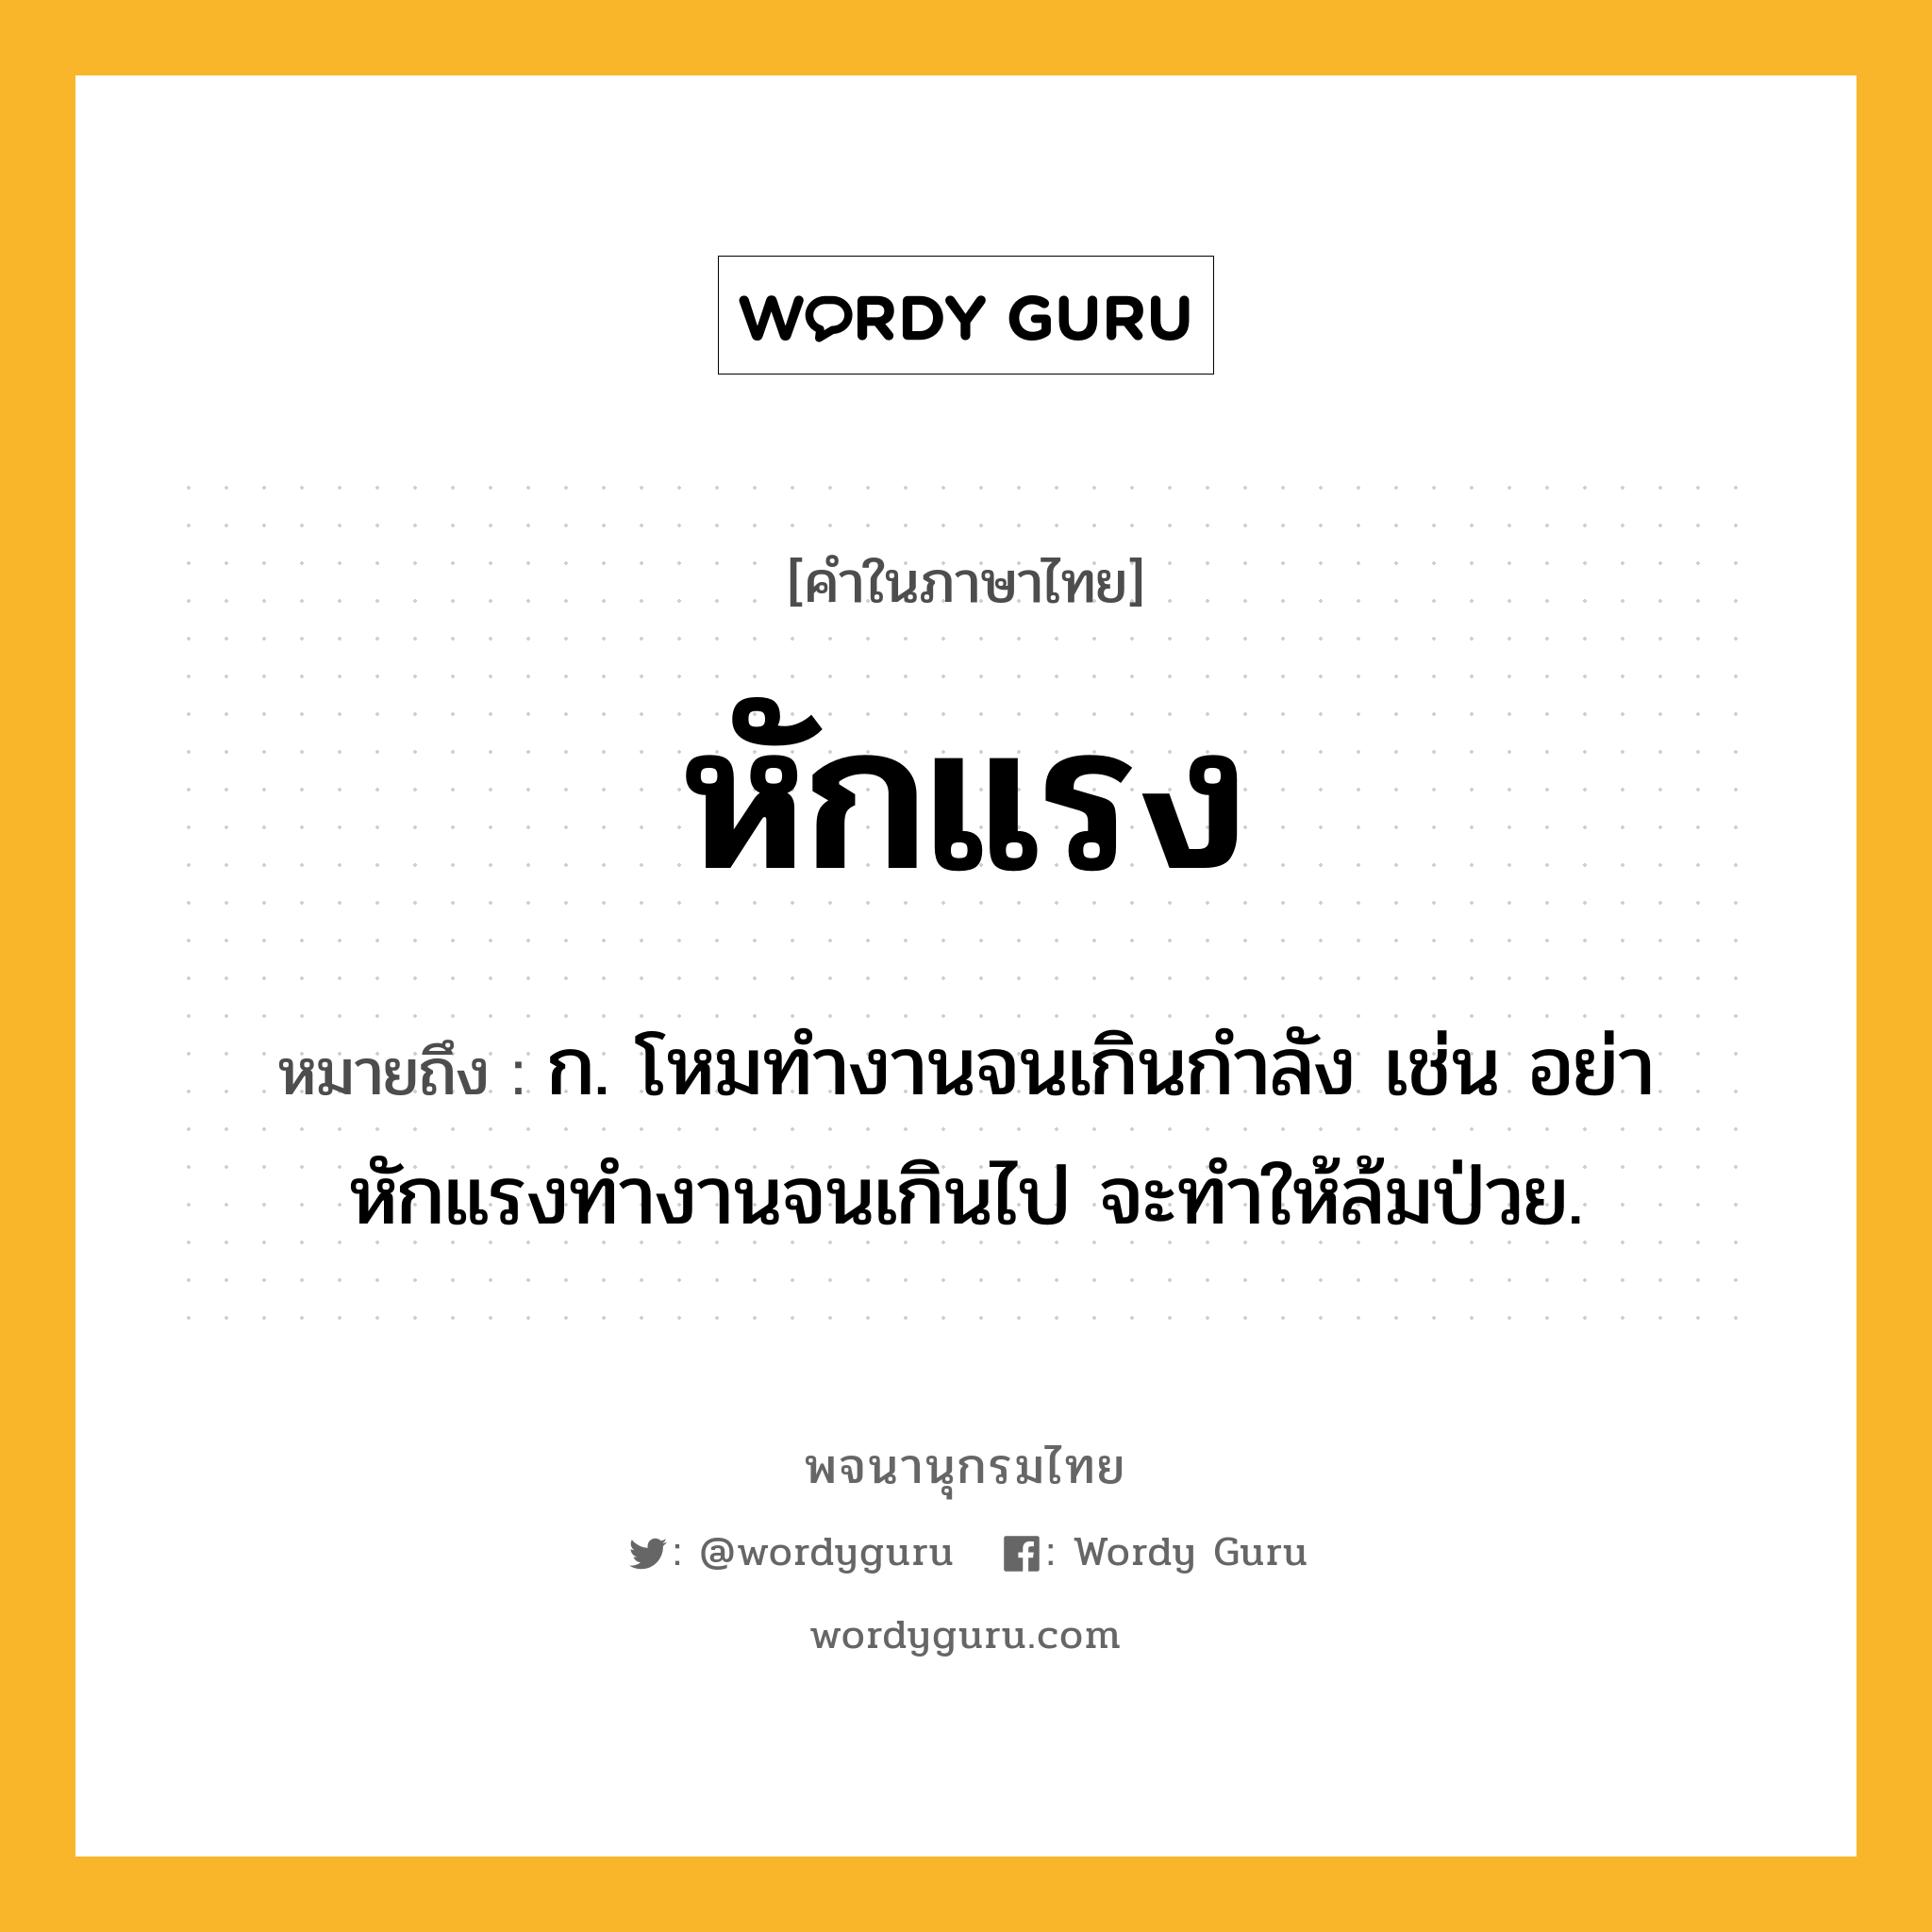 หักแรง ความหมาย หมายถึงอะไร?, คำในภาษาไทย หักแรง หมายถึง ก. โหมทำงานจนเกินกำลัง เช่น อย่าหักแรงทำงานจนเกินไป จะทำให้ล้มป่วย.